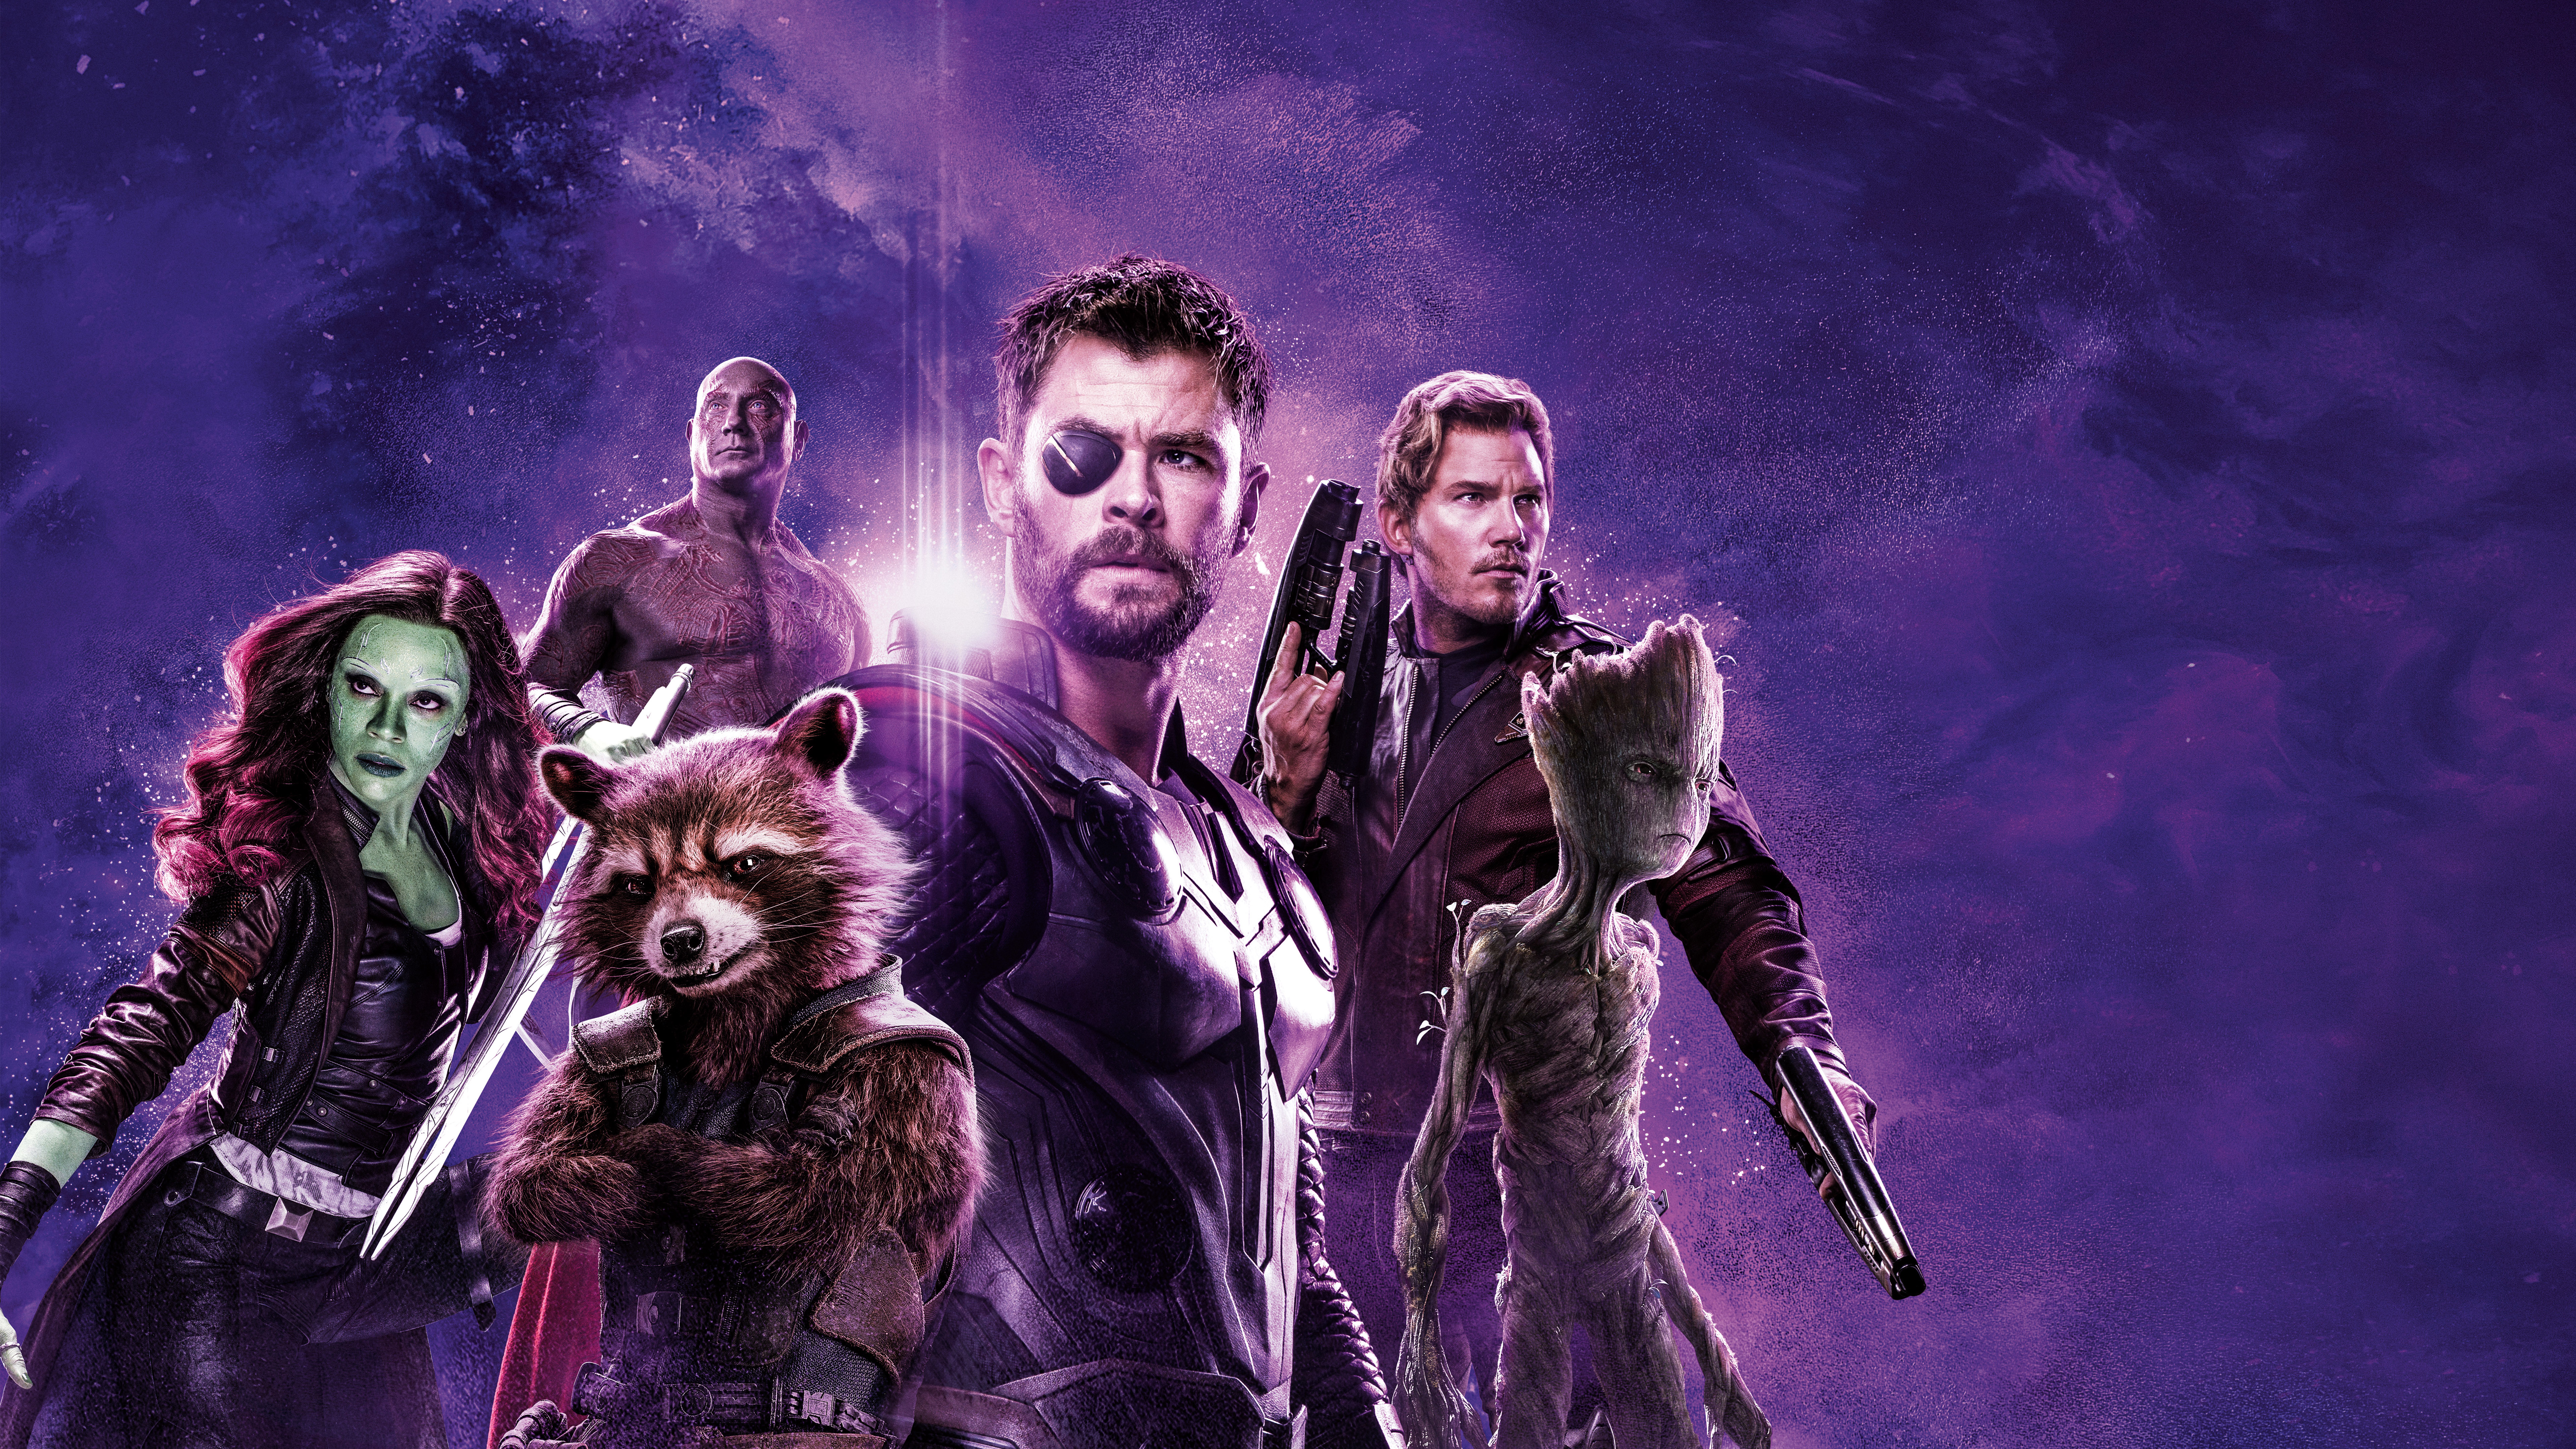 Avengers Endgame Thor Team 4k 8k Wallpapers - Avengers Infinity War Power Stone Poster - HD Wallpaper 